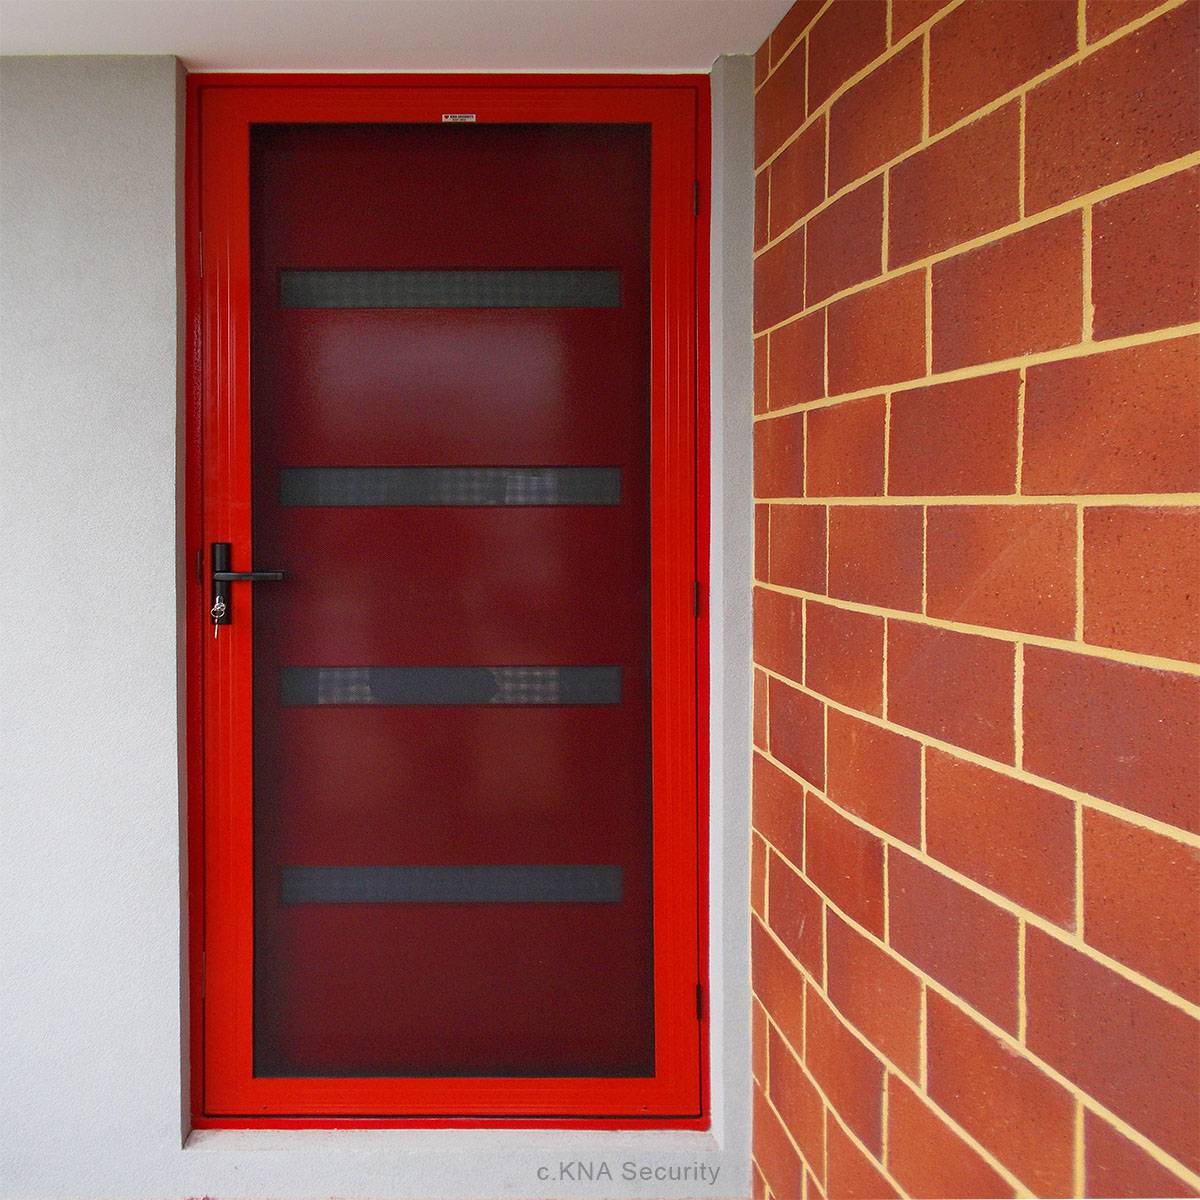 Red stainless steel security door